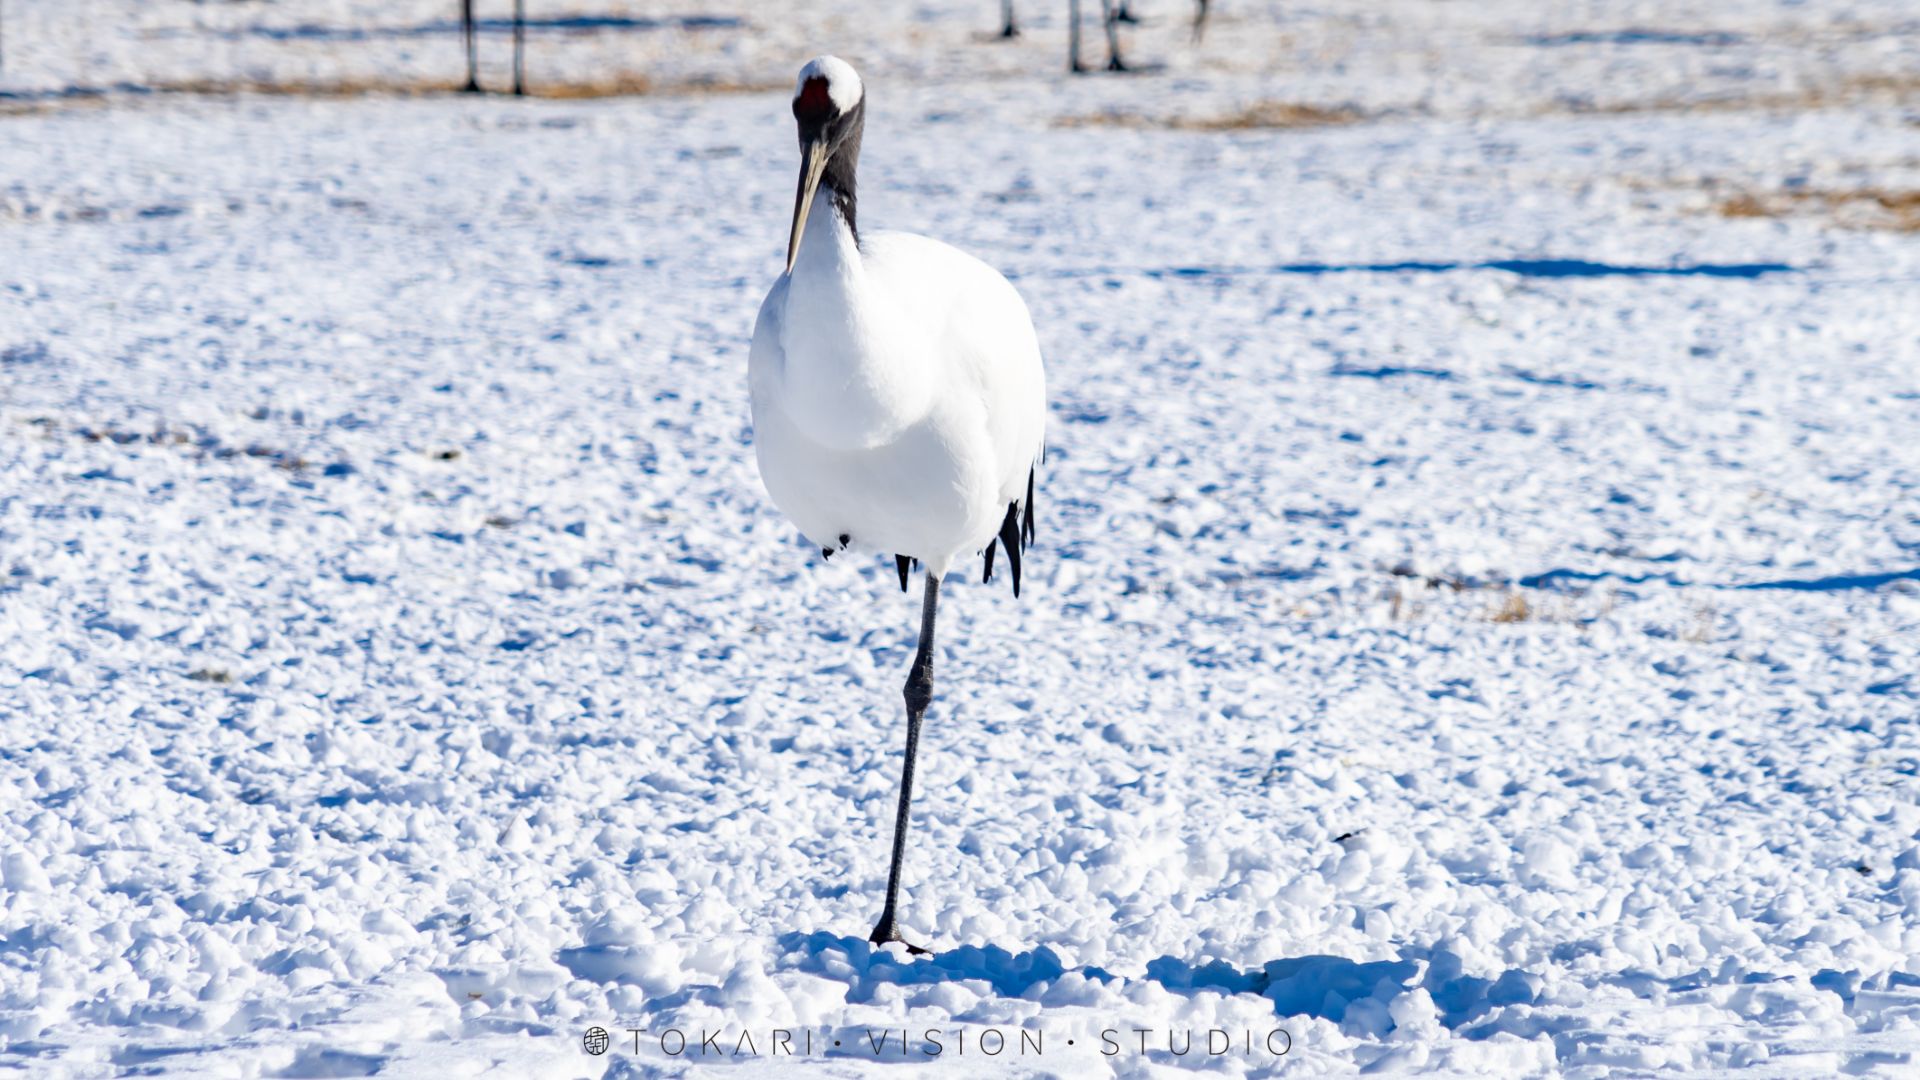 冬季的北海道有各种各样的美 但你见过雪地中的丹顶鹤吗